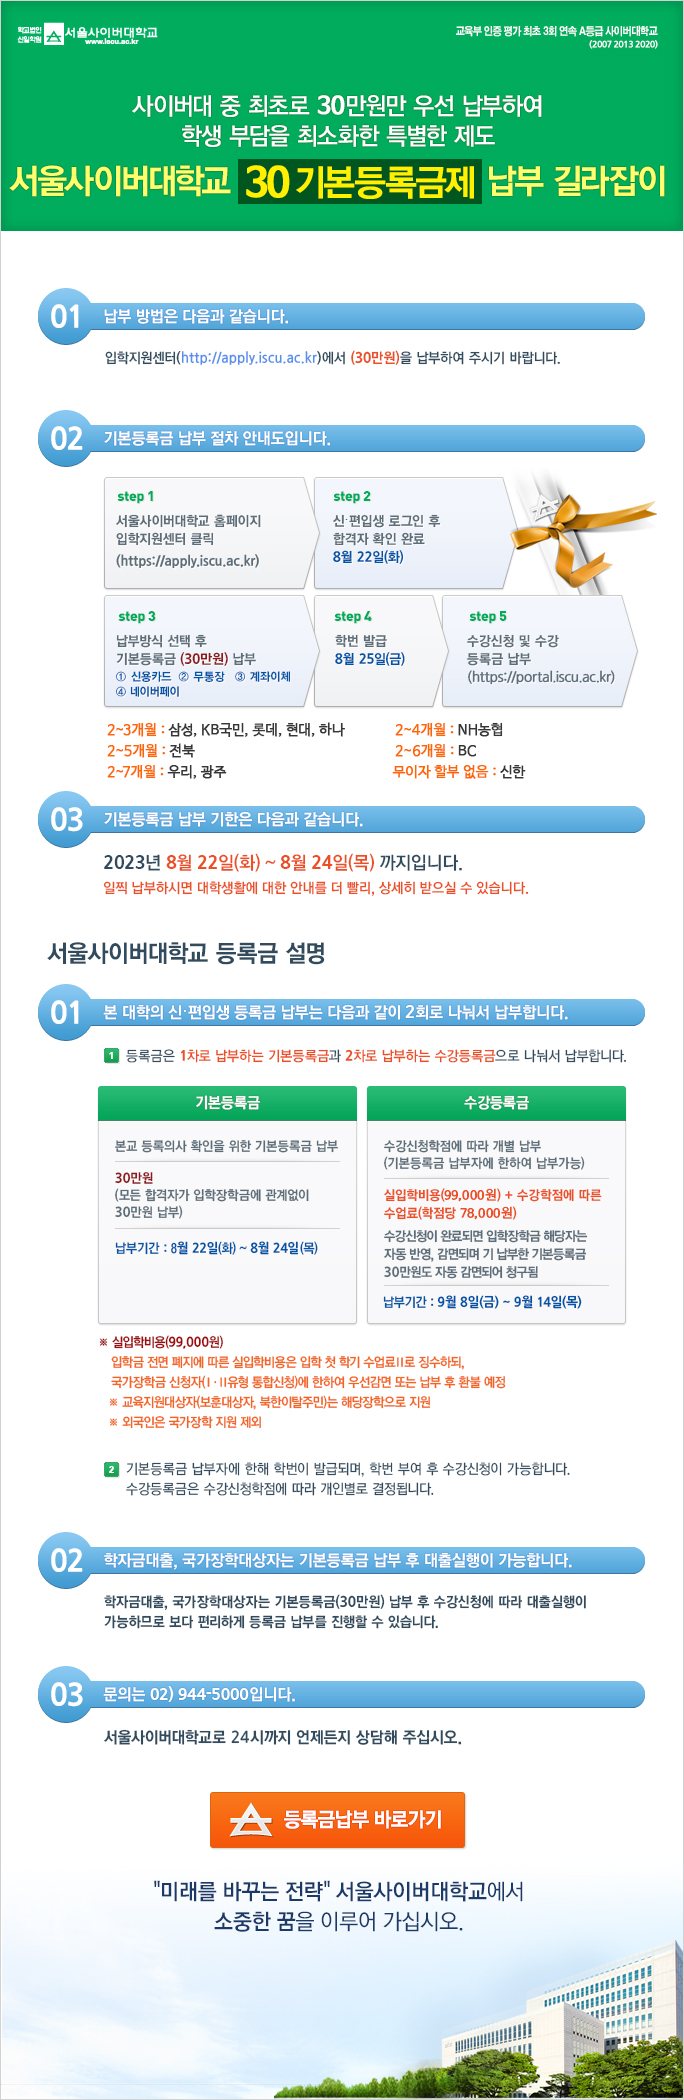 서울사이버대학교 30 기본등록금제 납부 길라잡이 - 아래내용참조